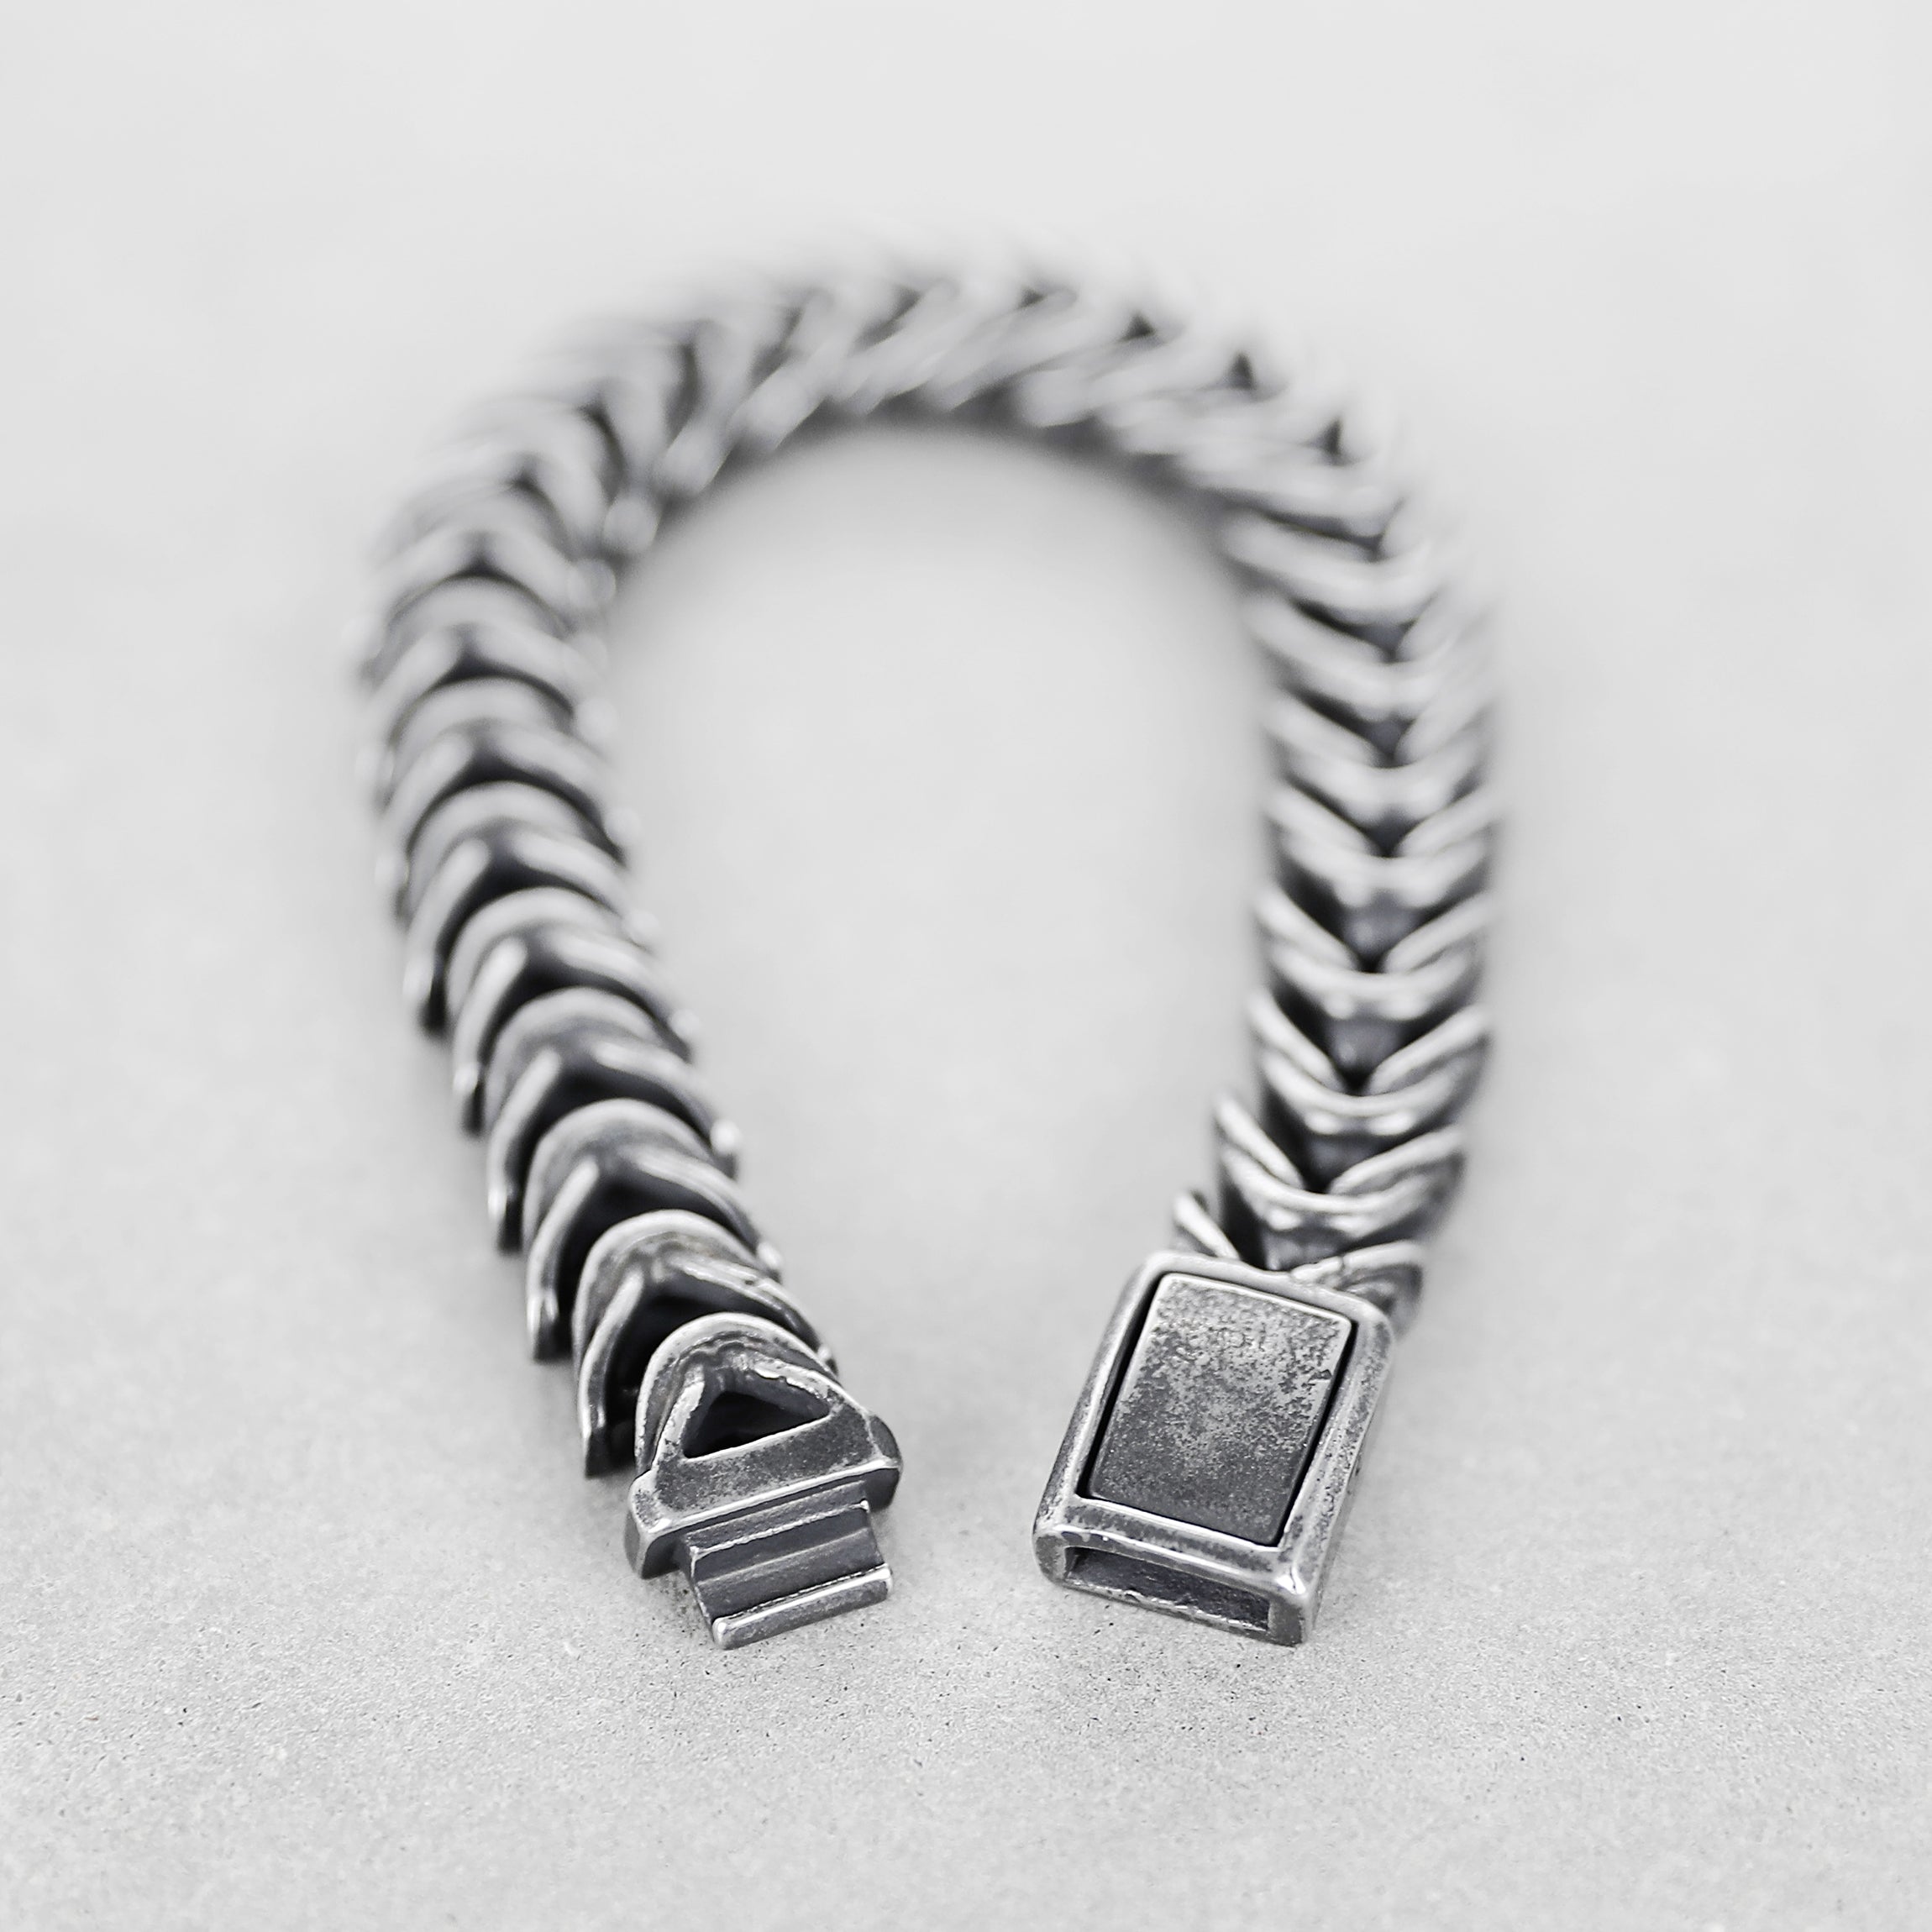 Animal Spine Bracelet - Aged Silver 13mm